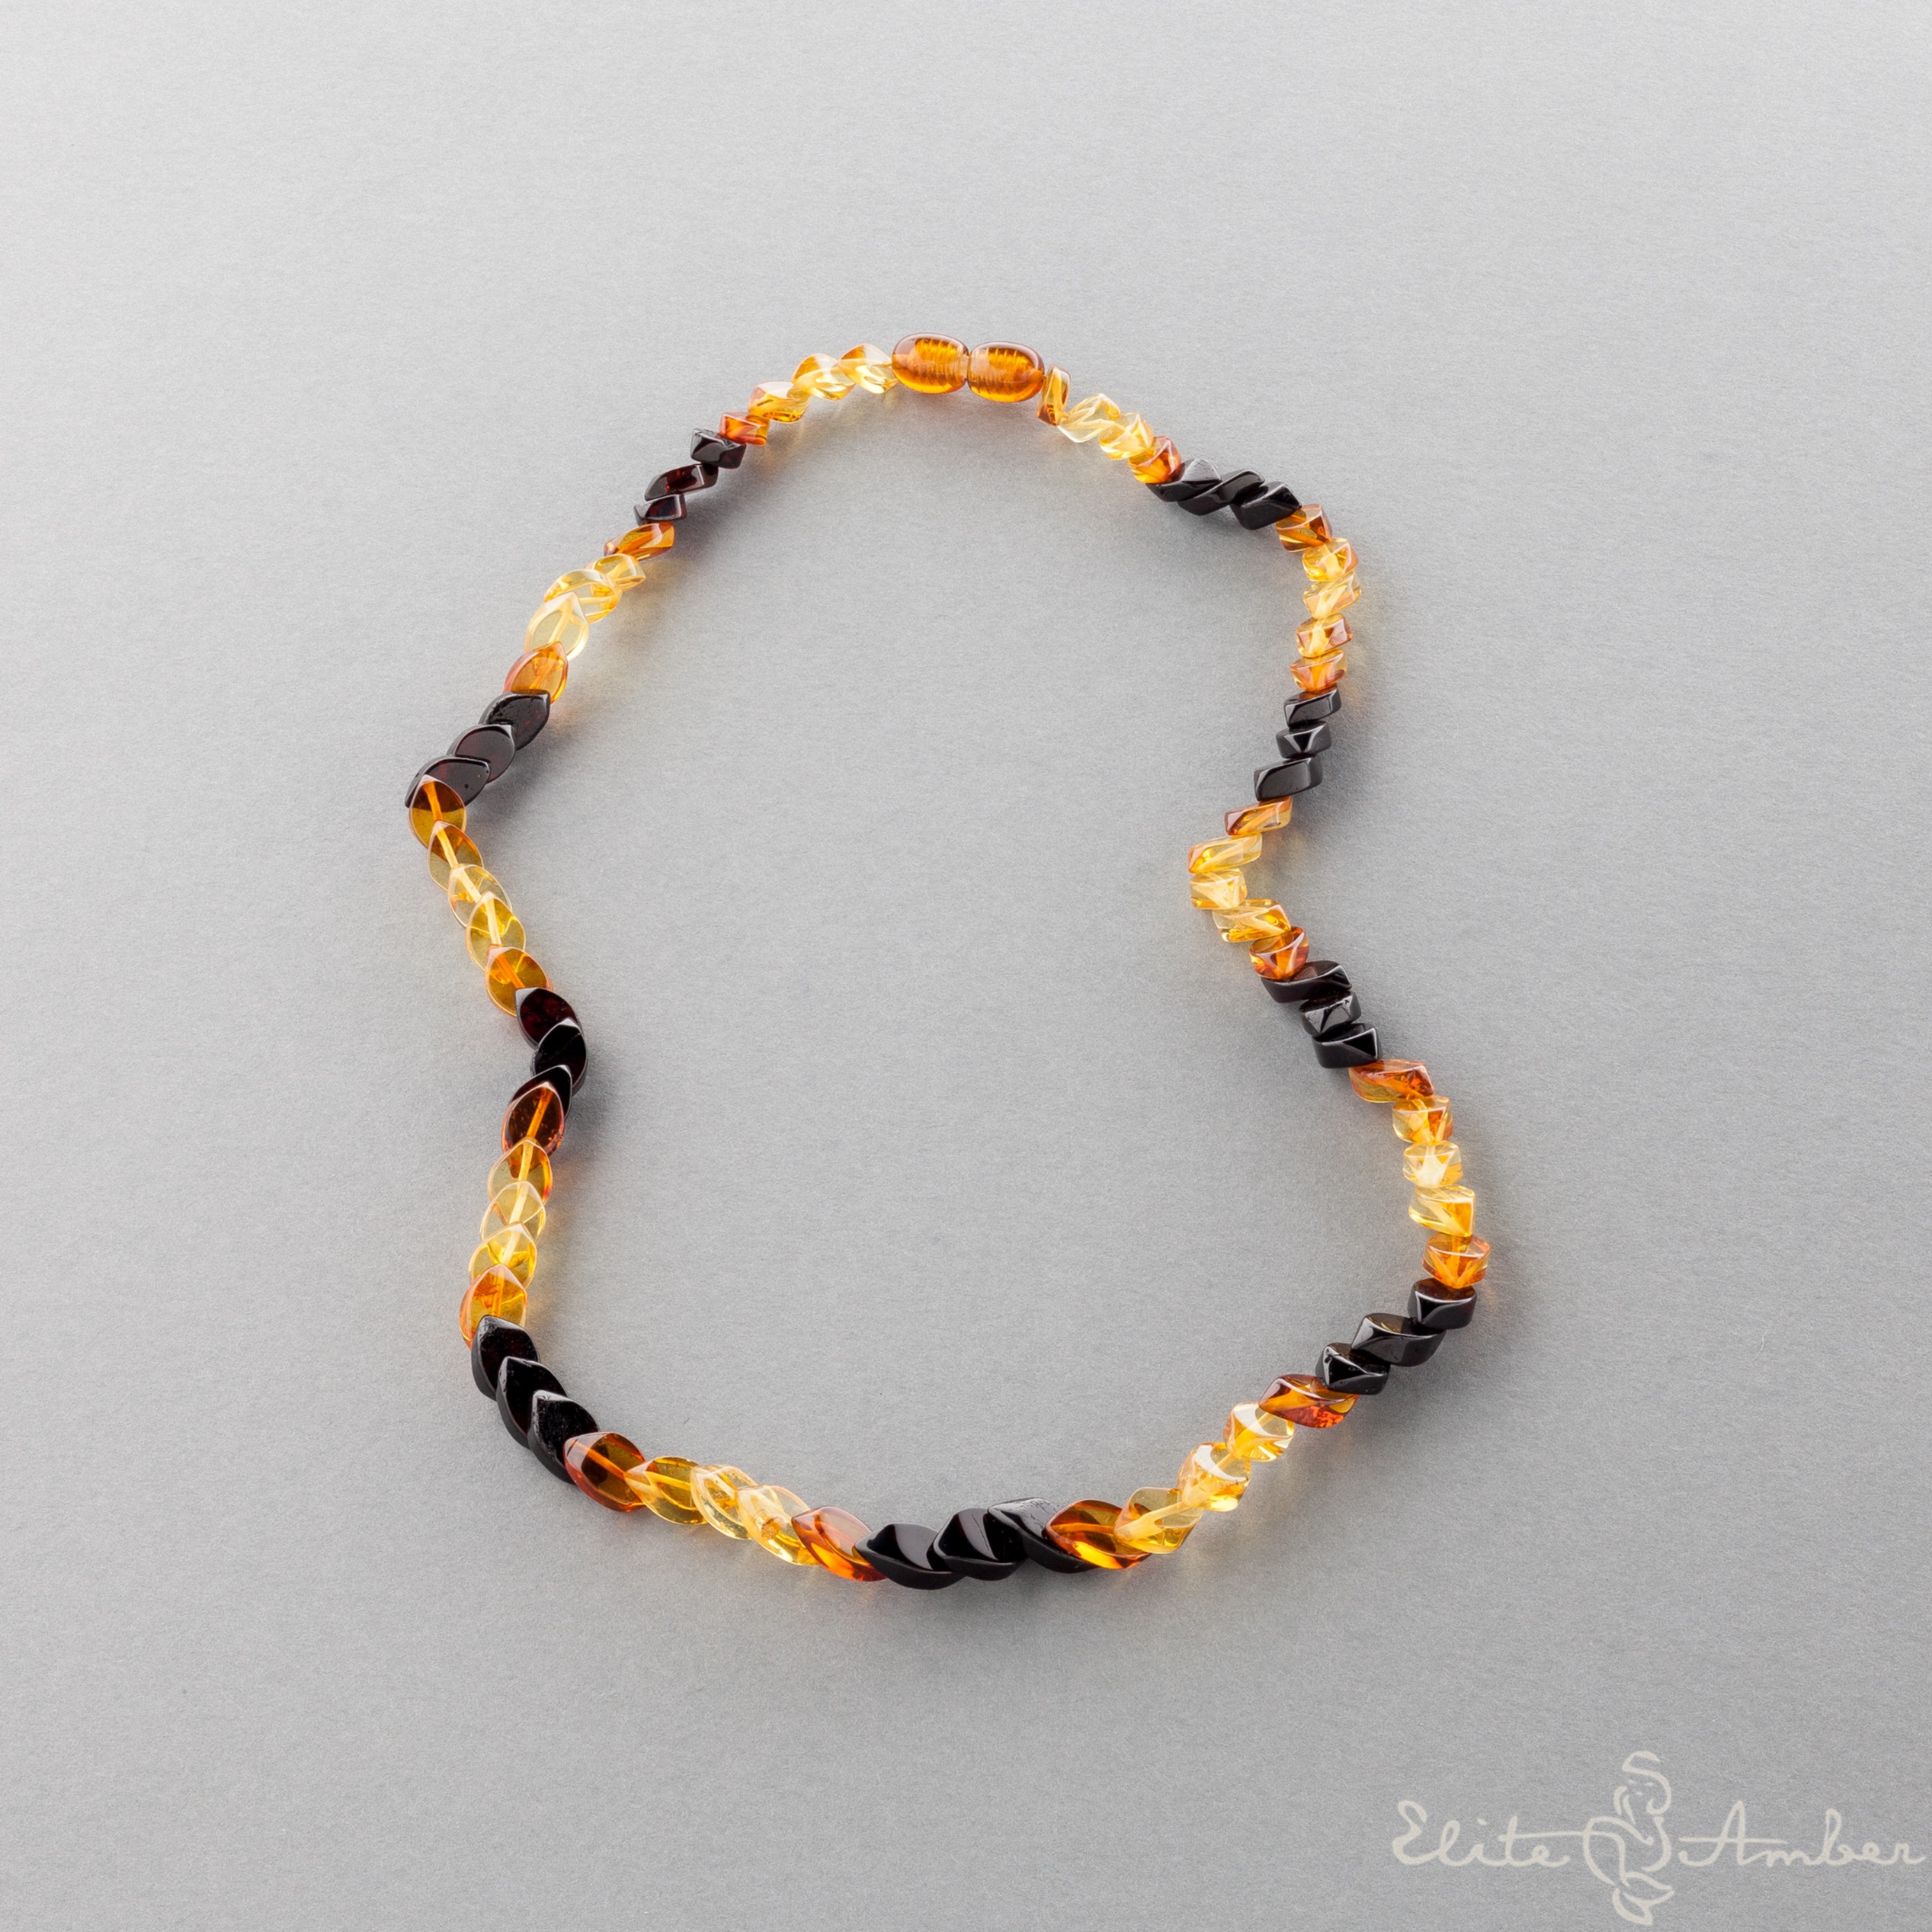 Amber necklace "Multi color rain"